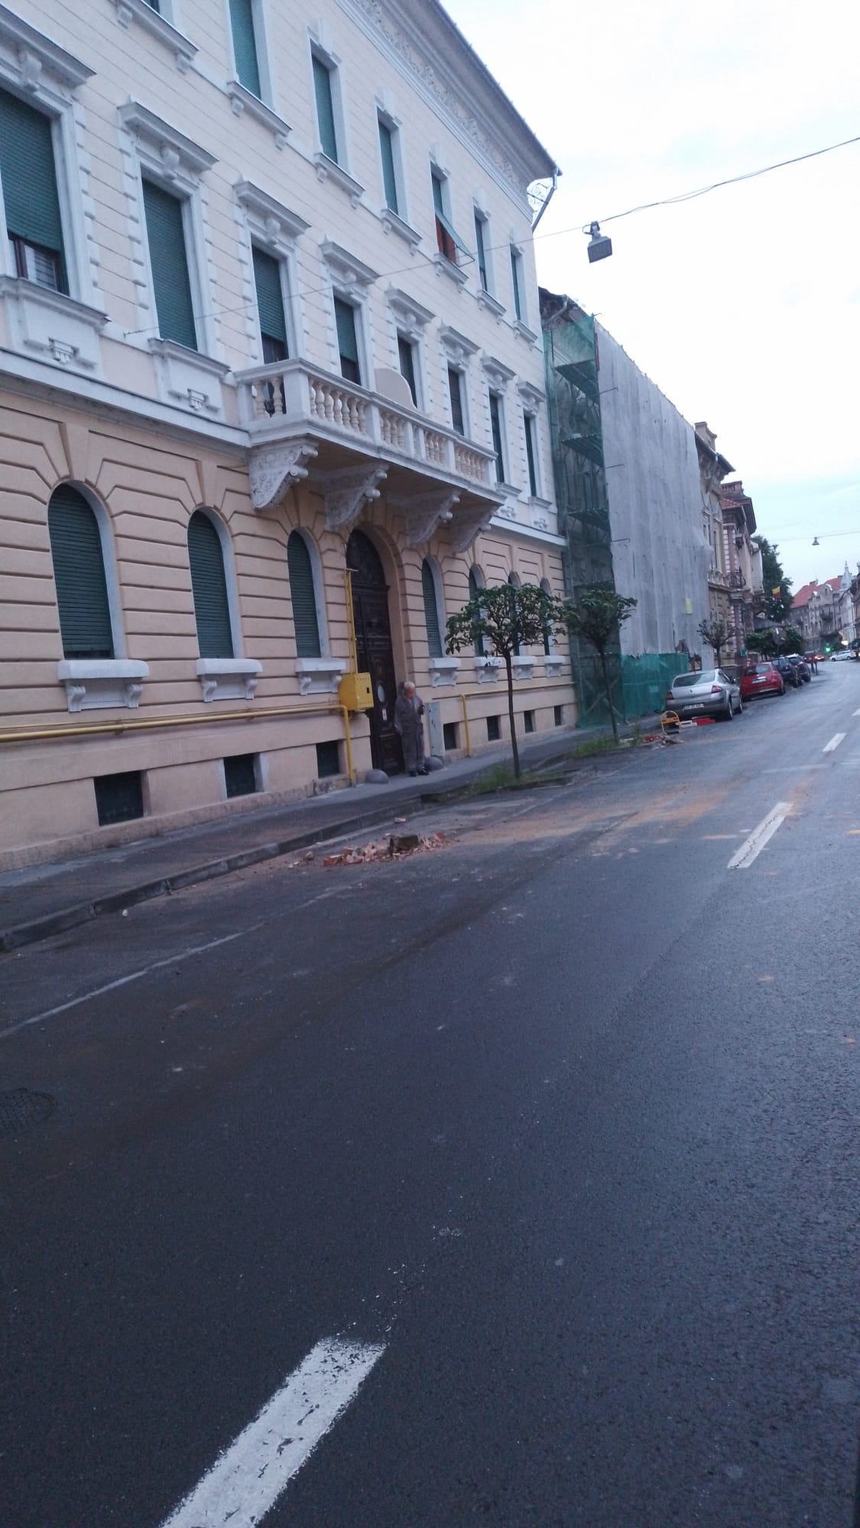 Arad - Şapte localităţi din judeţ au fost afectate de cutremur / Un grup de suport tehnic va evalua clădirile afectate pentru a stabili dacă prezintă risc de prăbuşire
